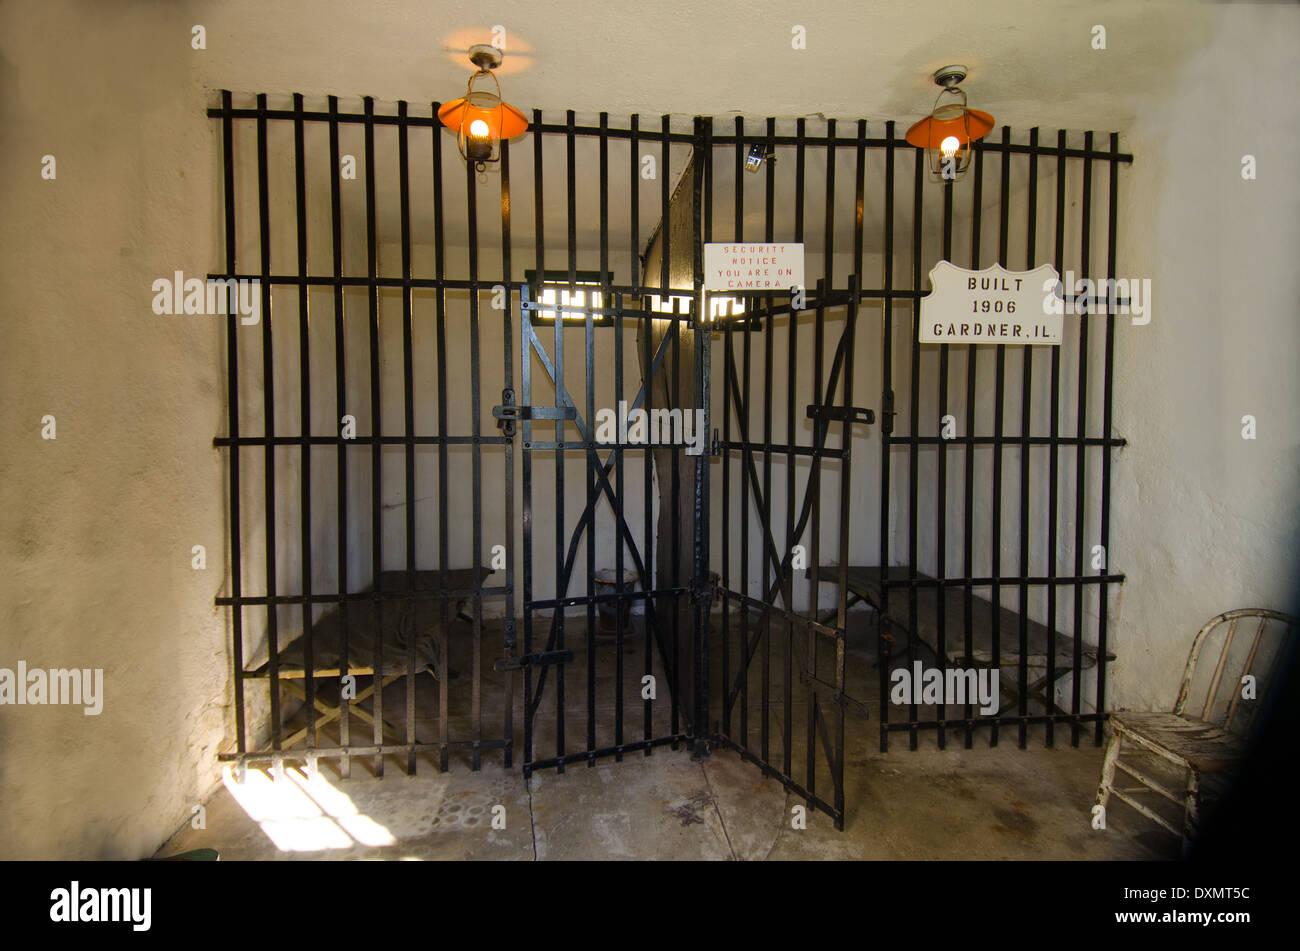 La cellule de la prison de Two-Cell, construit en 1906, une attraction populaire dans la région de Gardner, Illinois, une ville le long de la Route 66. Banque D'Images